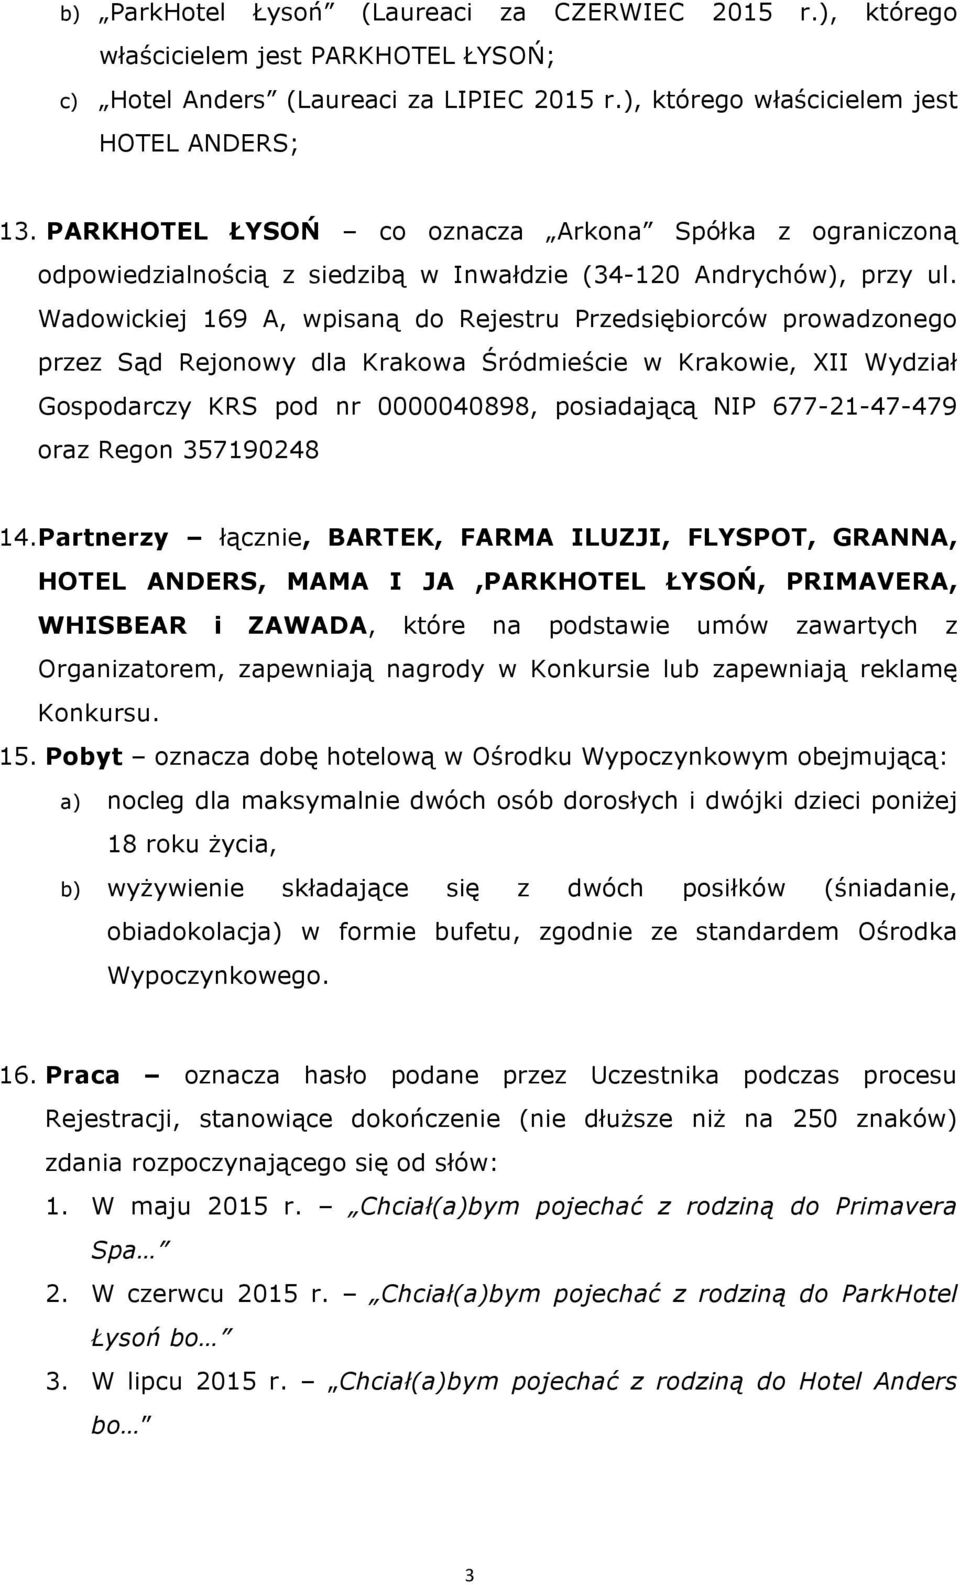 Wadowickiej 169 A, wpisaną do Rejestru Przedsiębiorców prowadzonego przez Sąd Rejonowy dla Krakowa Śródmieście w Krakowie, XII Wydział Gospodarczy KRS pod nr 0000040898, posiadającą NIP 677-21-47-479